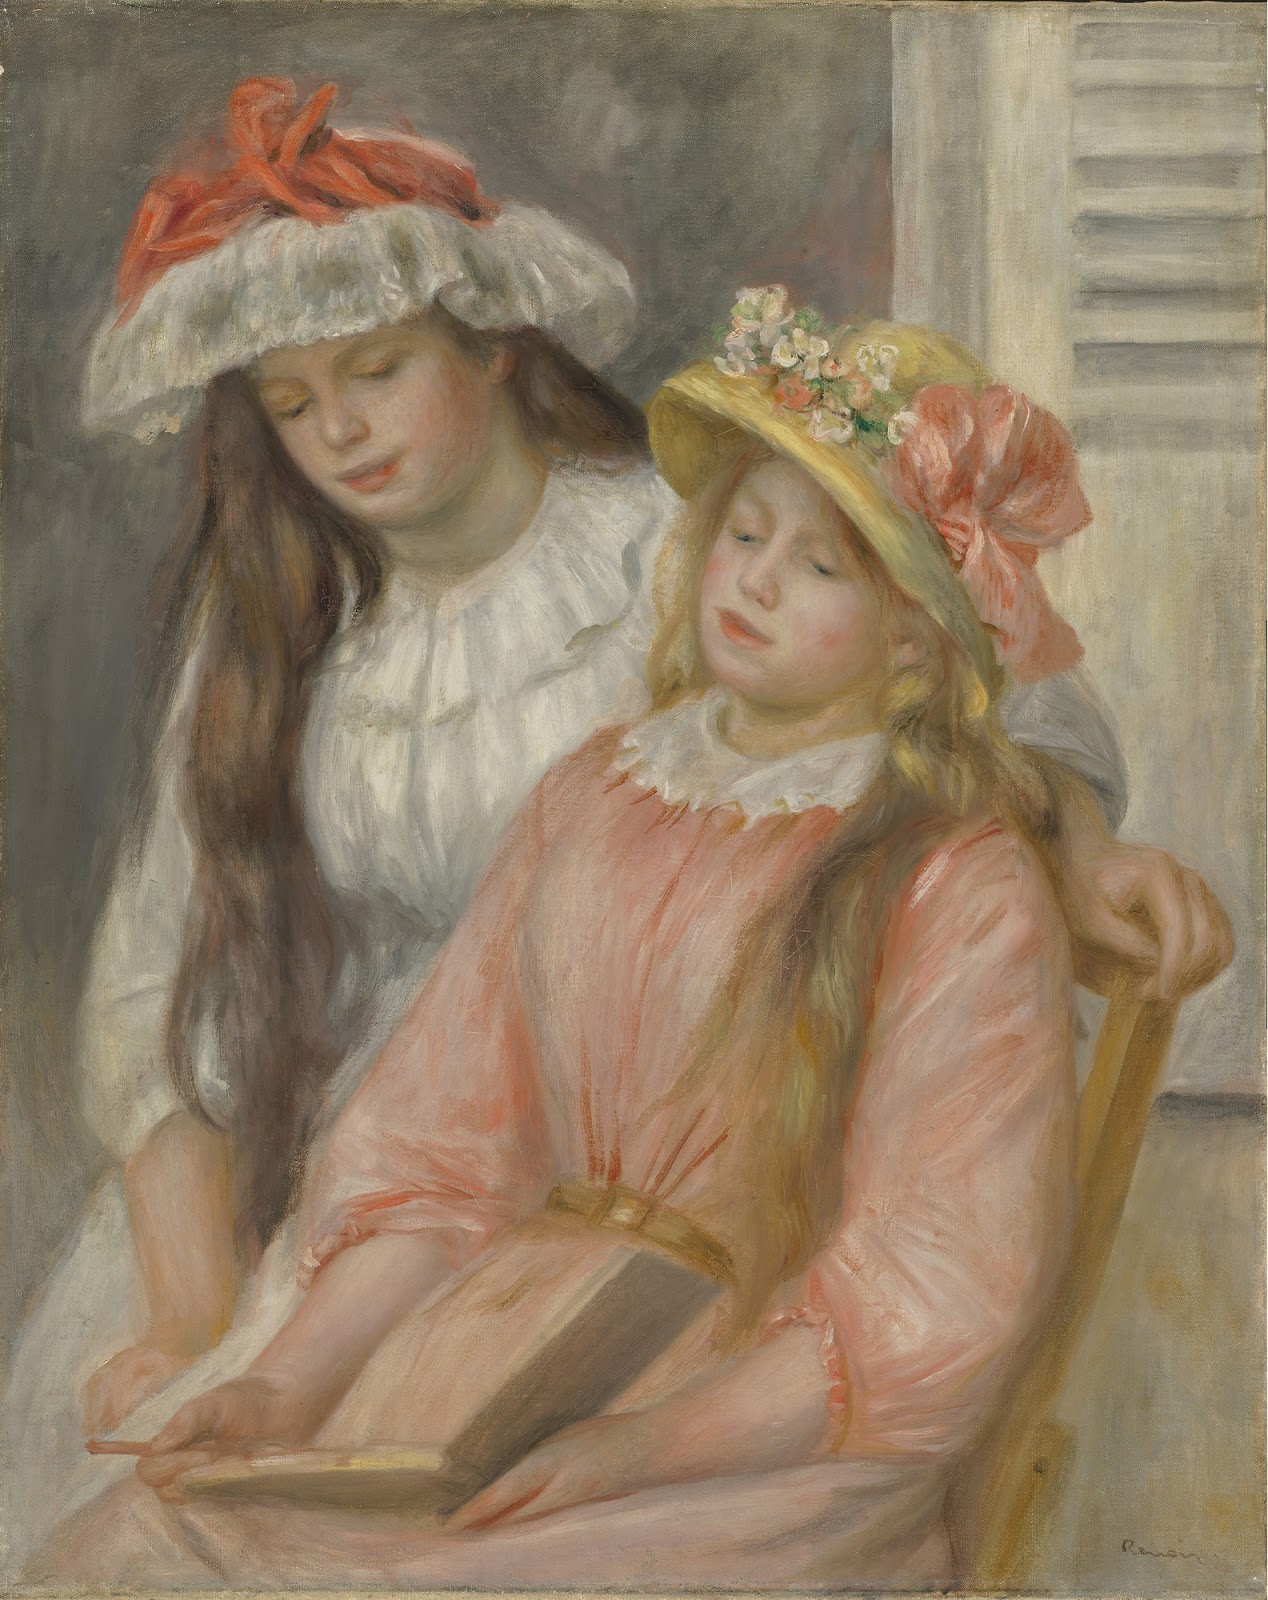 Pierre+Auguste+Renoir-1841-1-19 (896).jpg